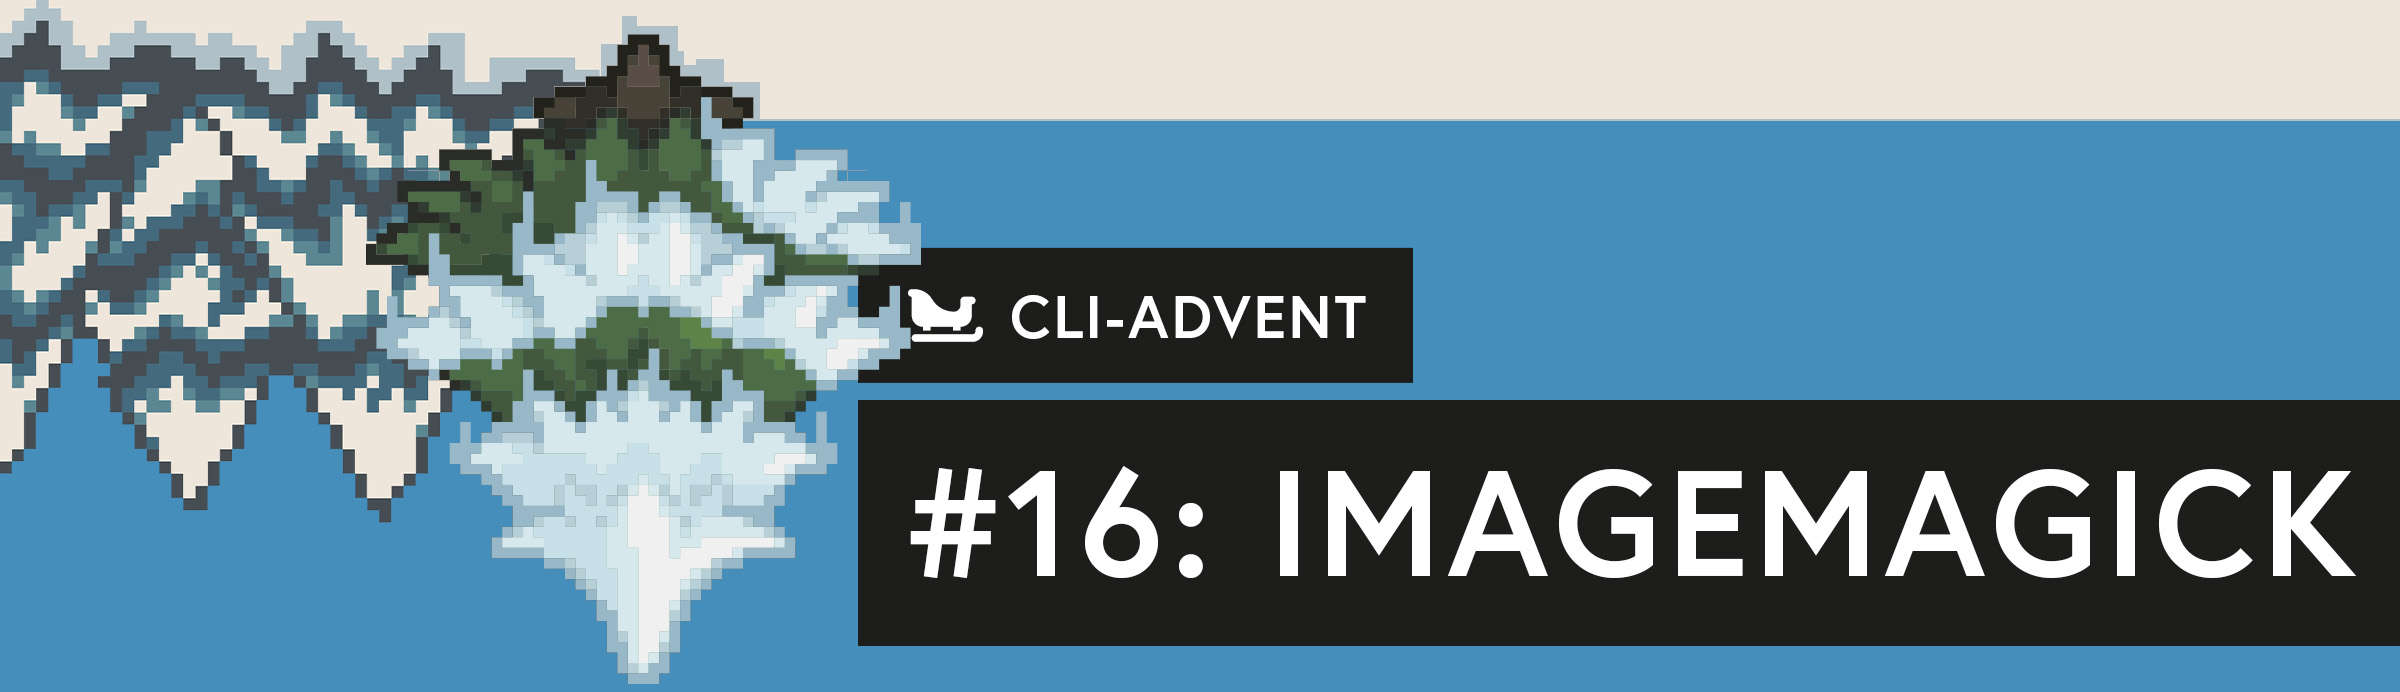 CLI-Adventskalender: ImageMagick